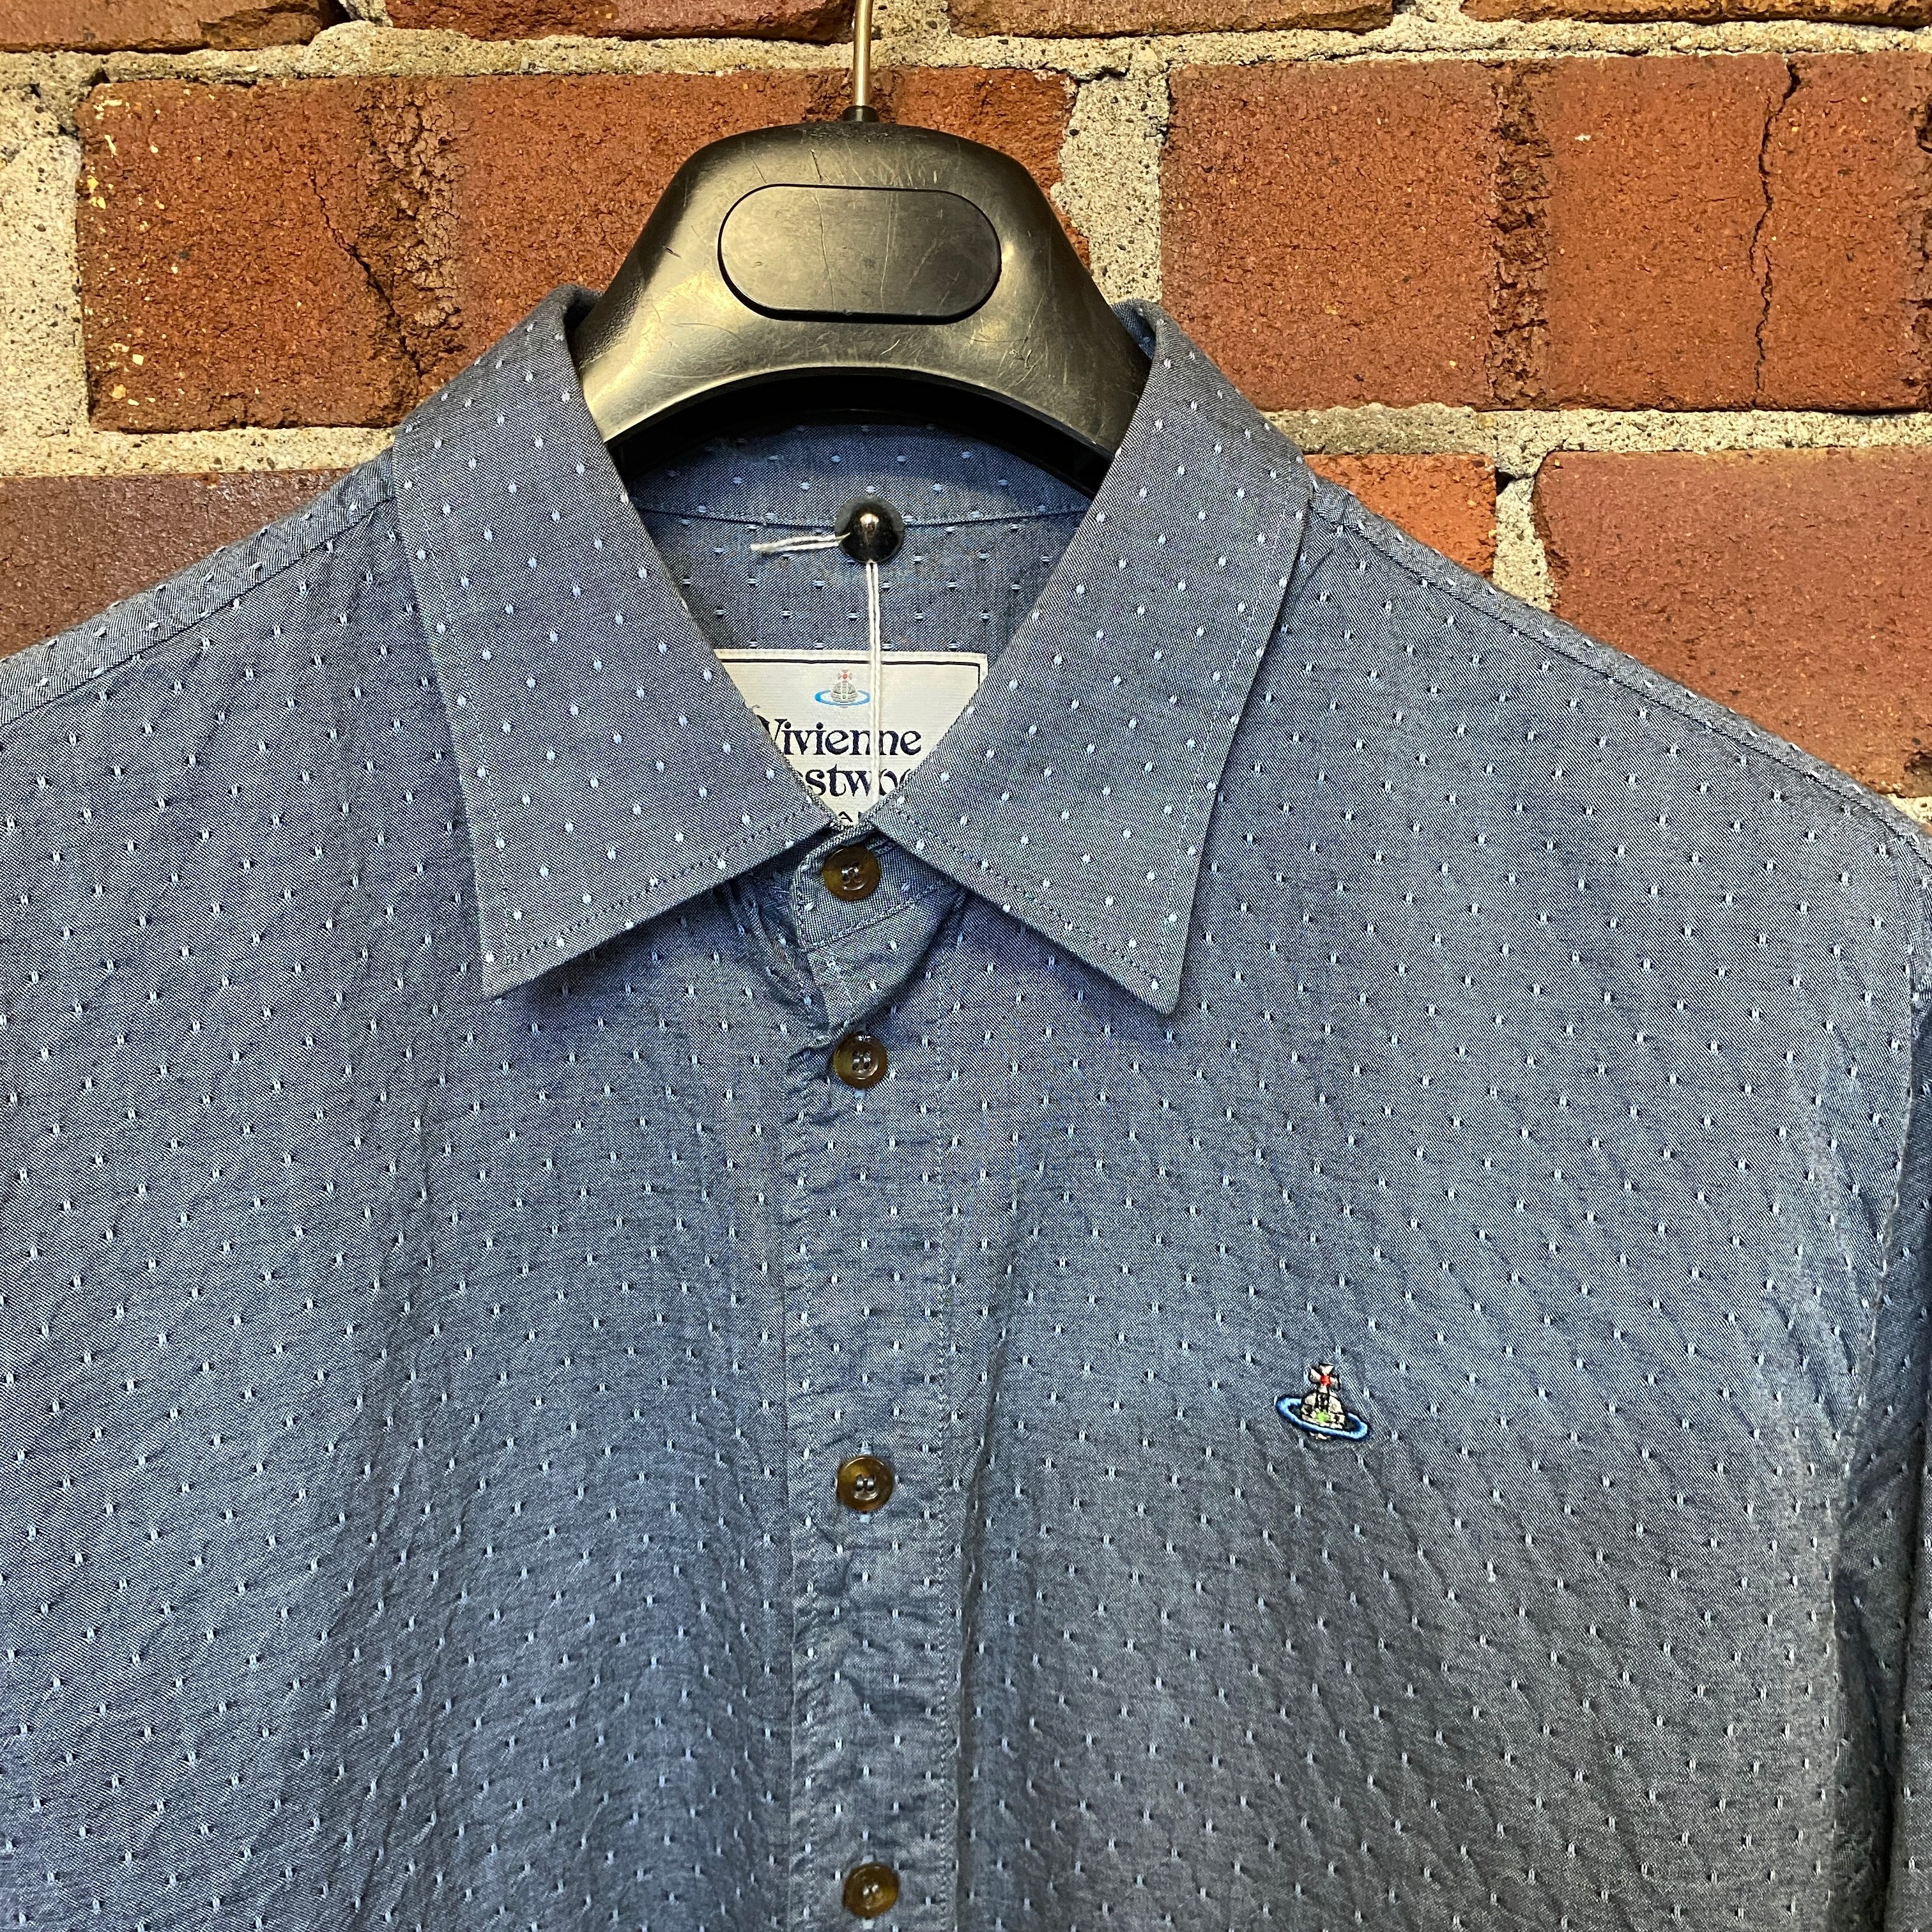 VIVIENNE WESTWOOD textured cotton shirt